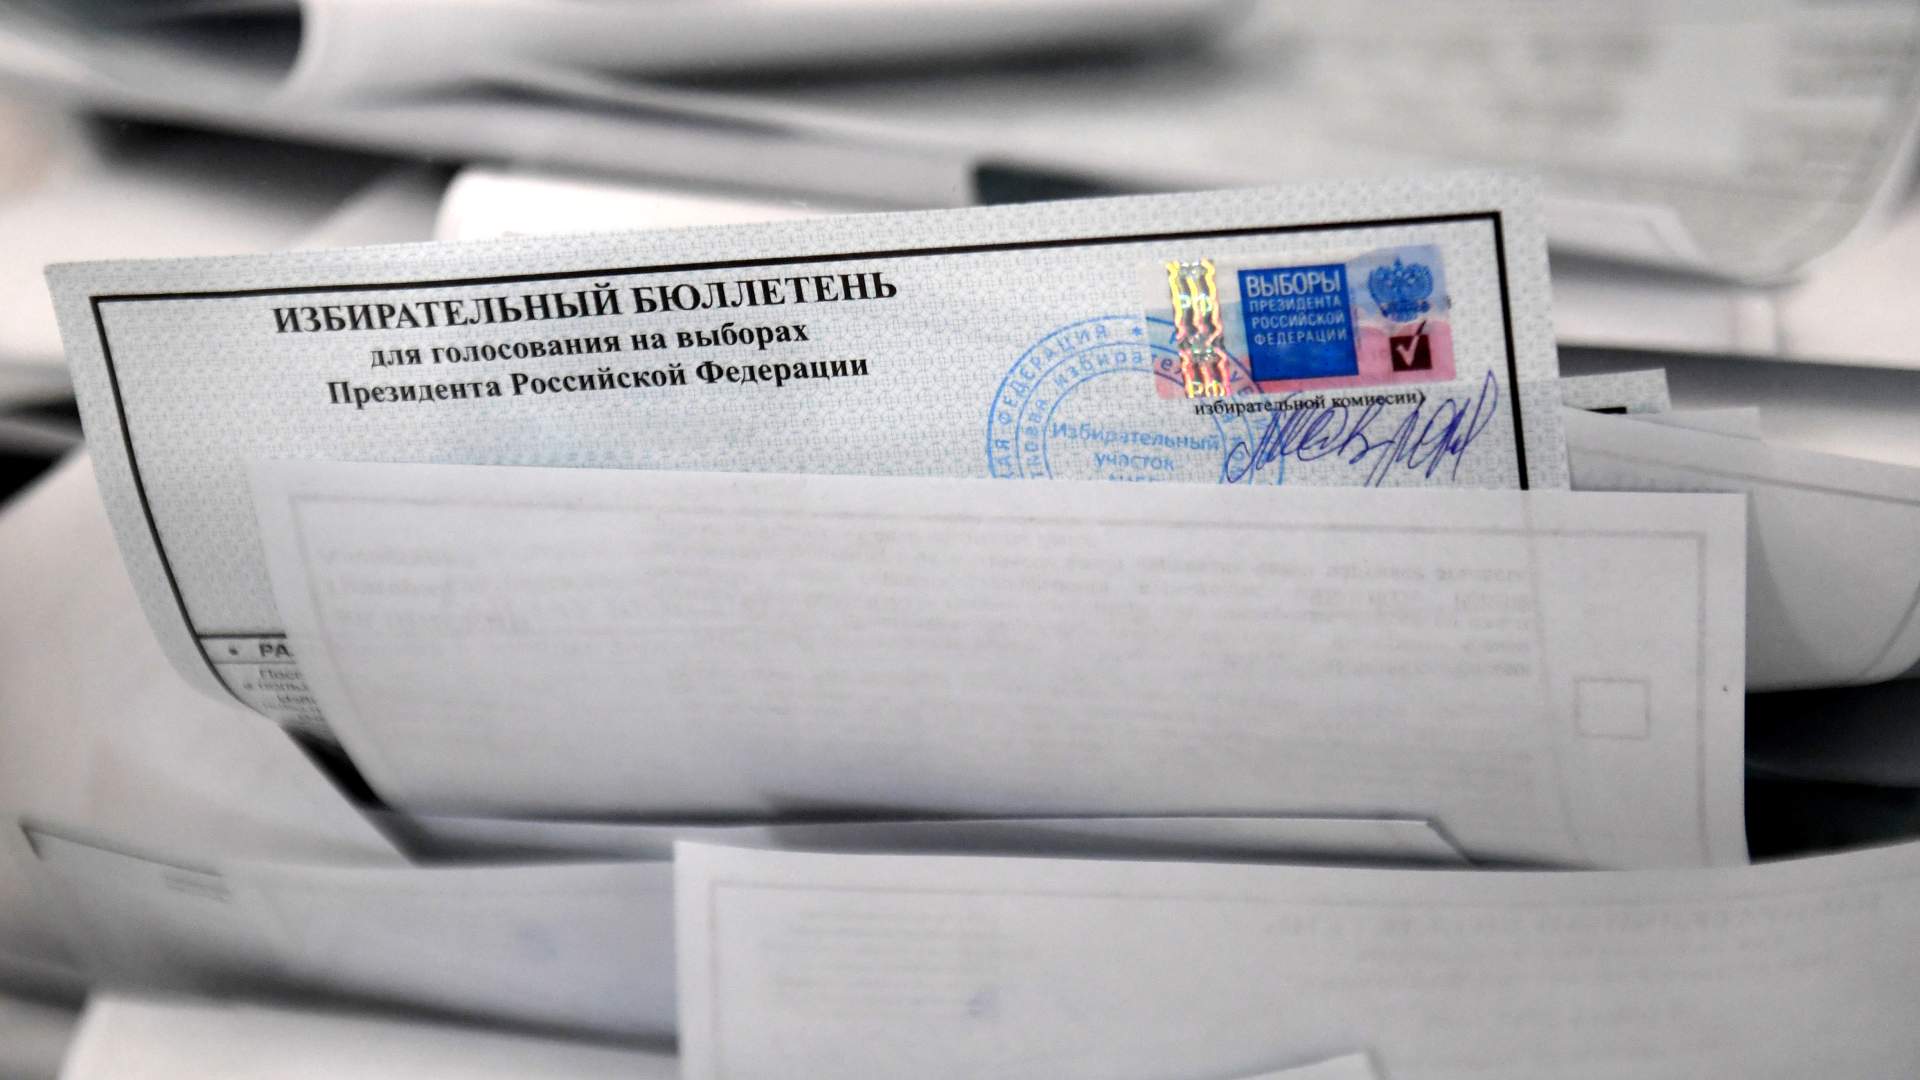 В Московской области задержали двух человек за надписи на бюллетенях